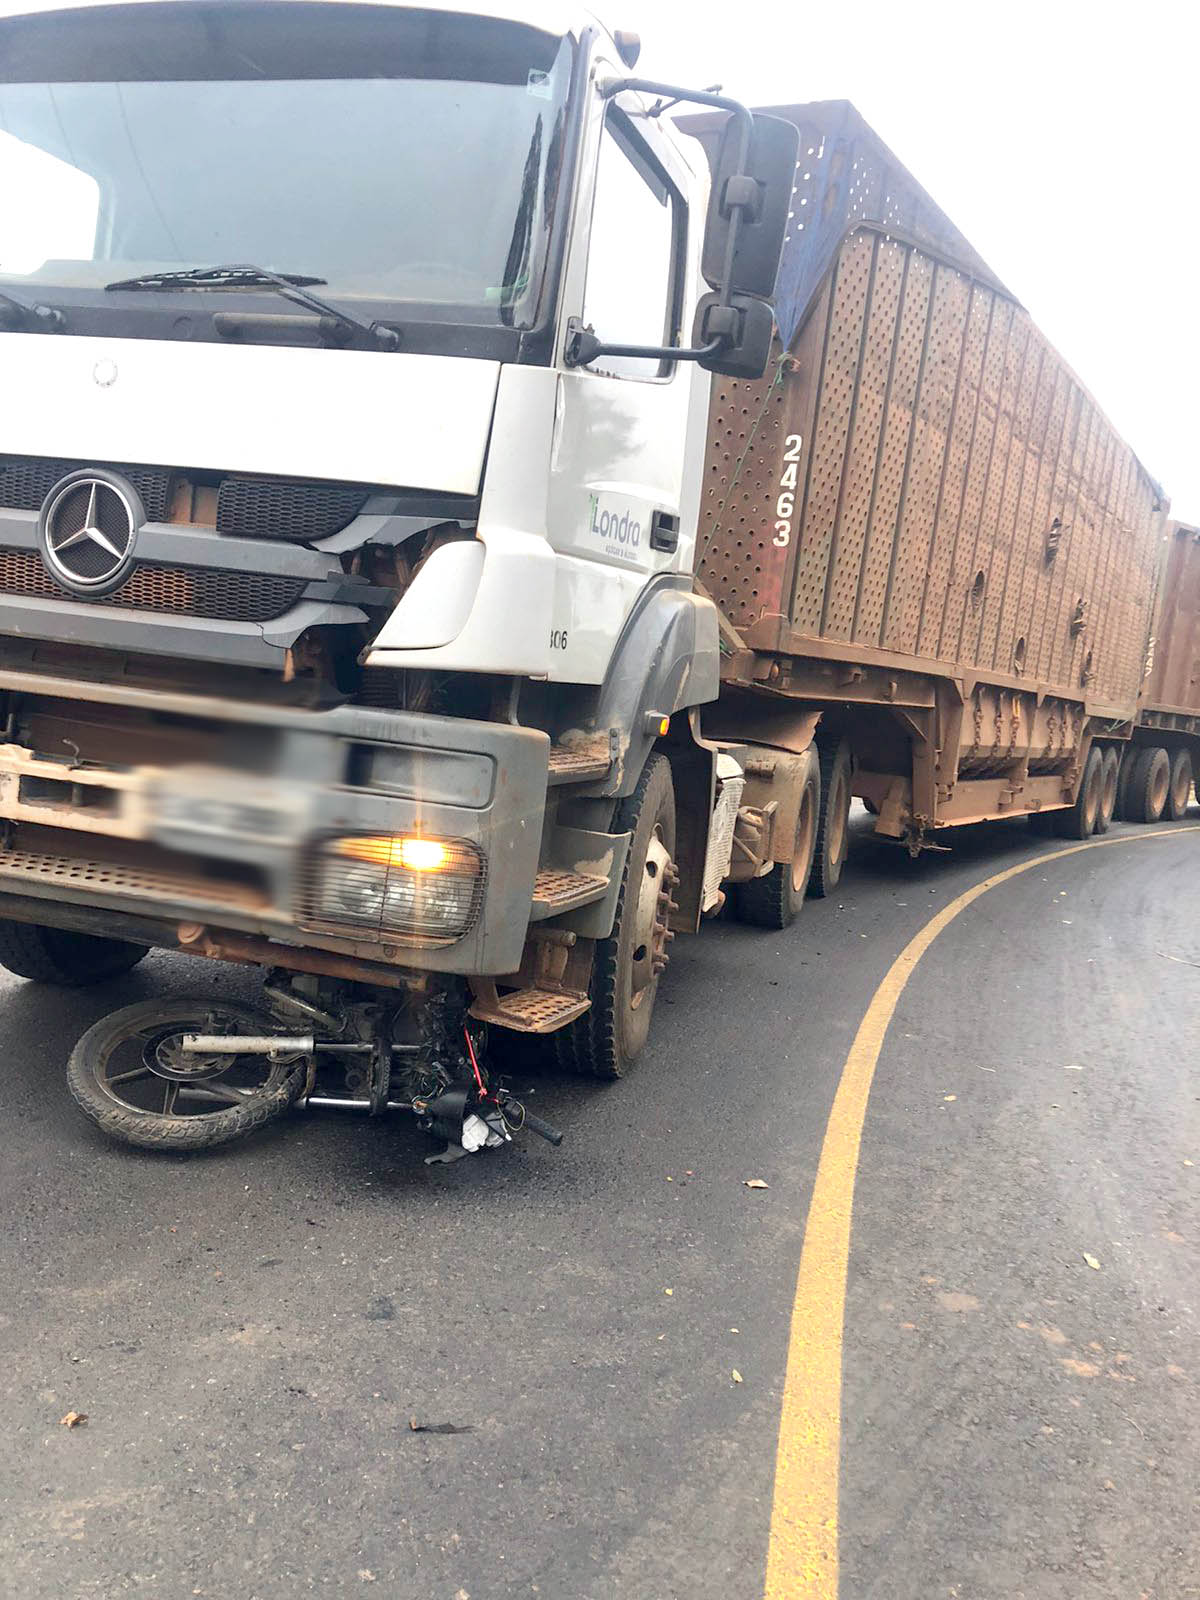 Moto fica presa entre caminhão e asfalto após colisão frontal, em vicinal de Itaí - sudoestepaulista